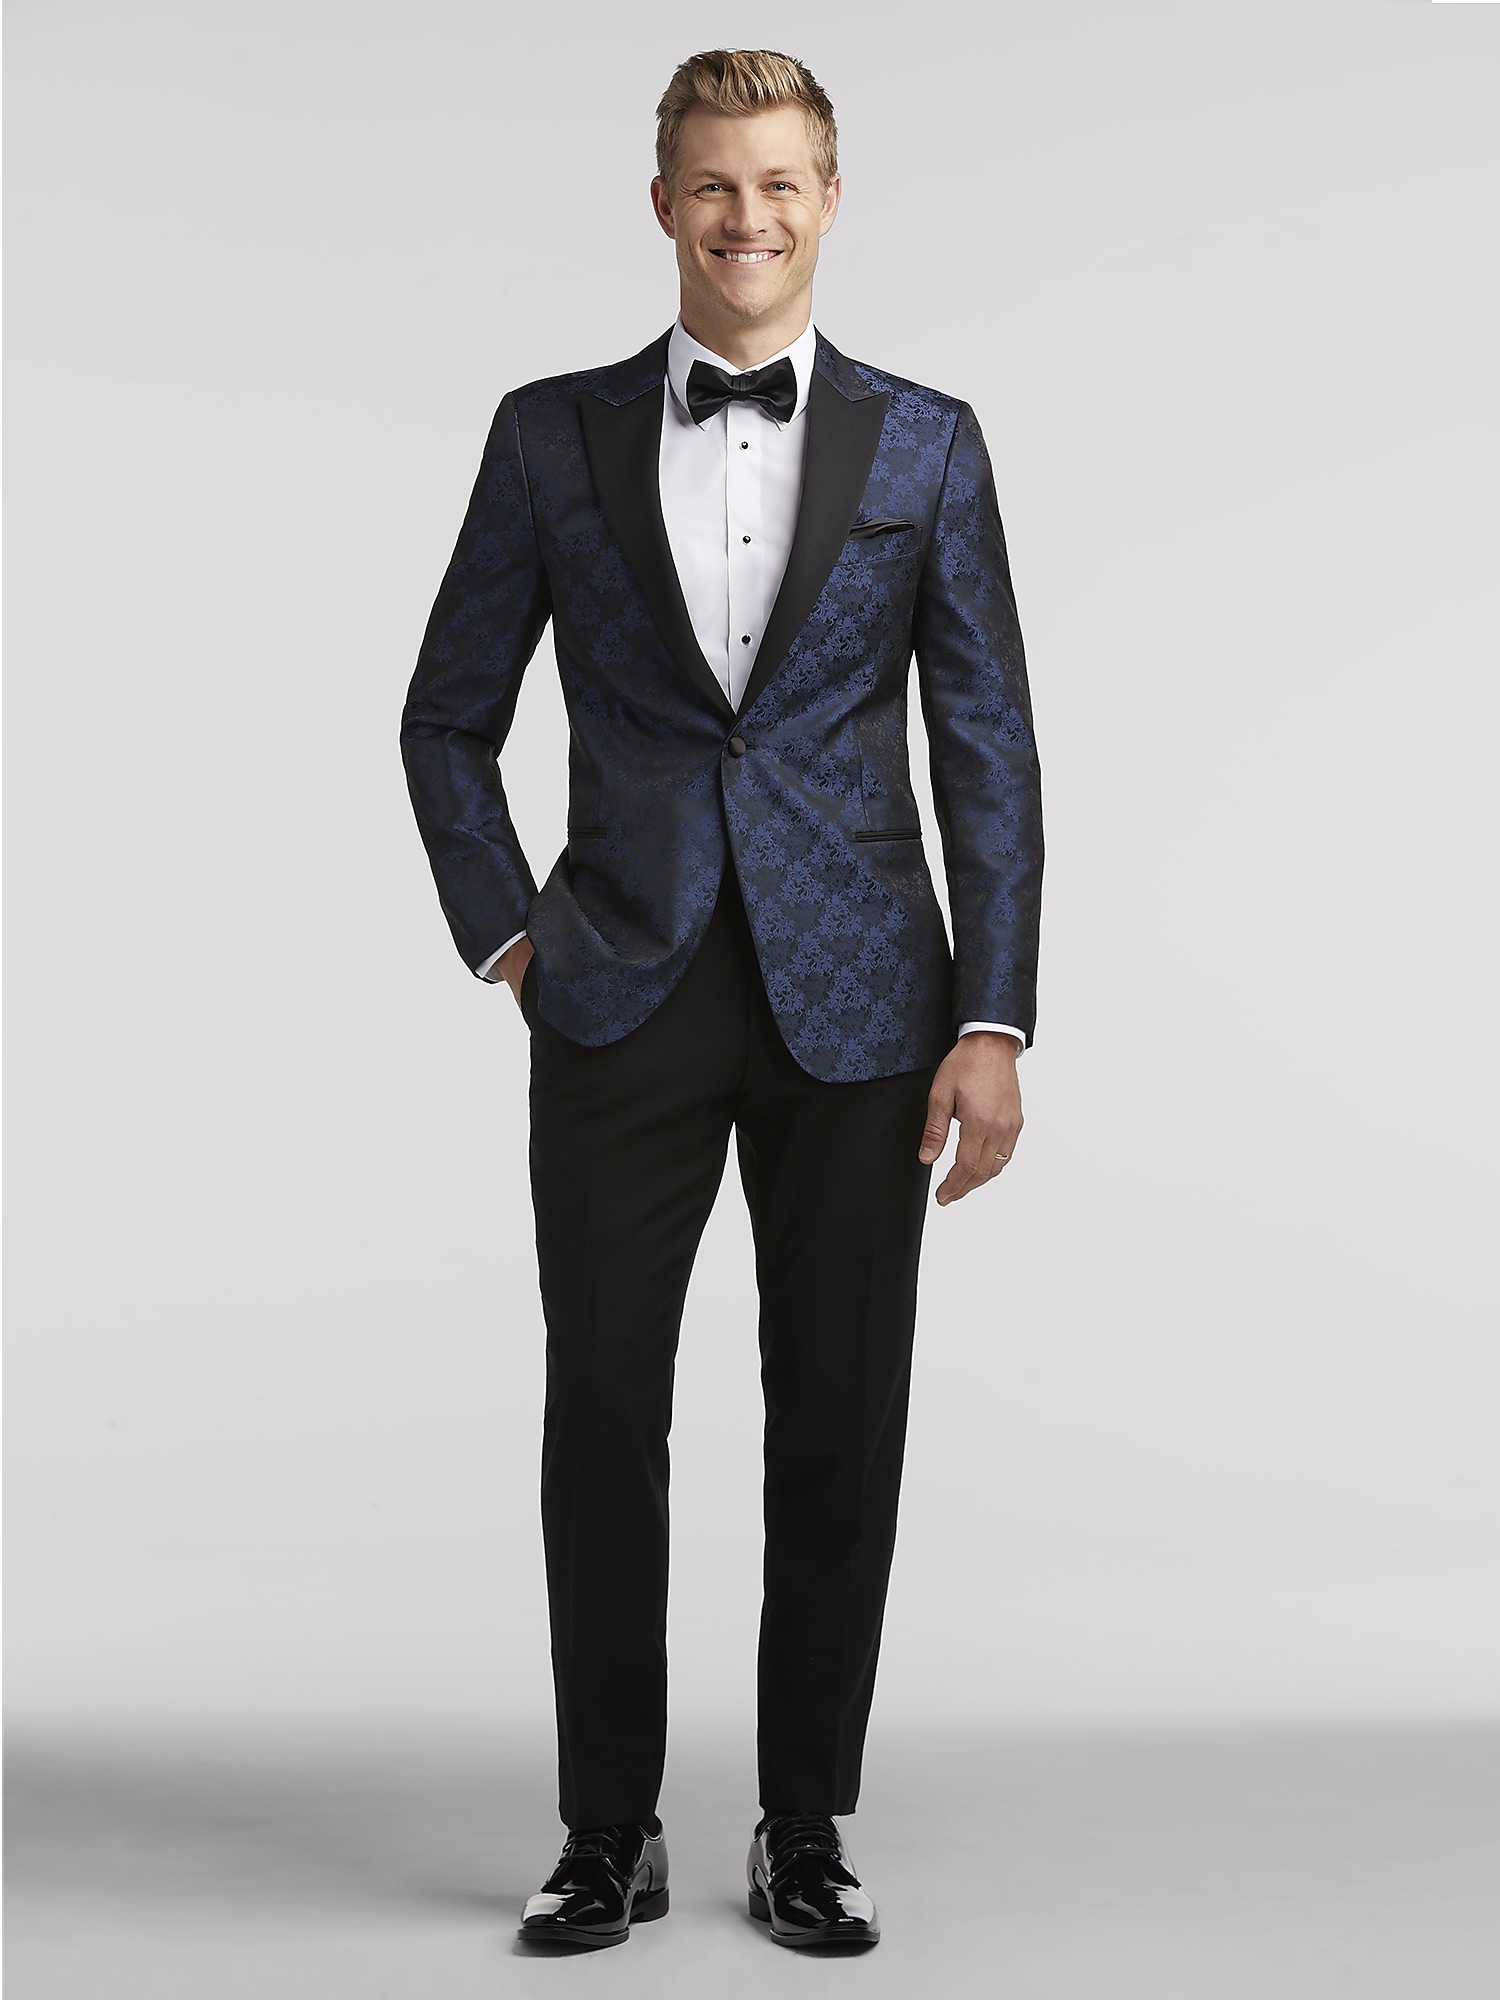 Eyesight Chaise longue Wonderful Blue Dinner Jacket Tux by Egara | Tuxedo Rental | Men's Wearhouse